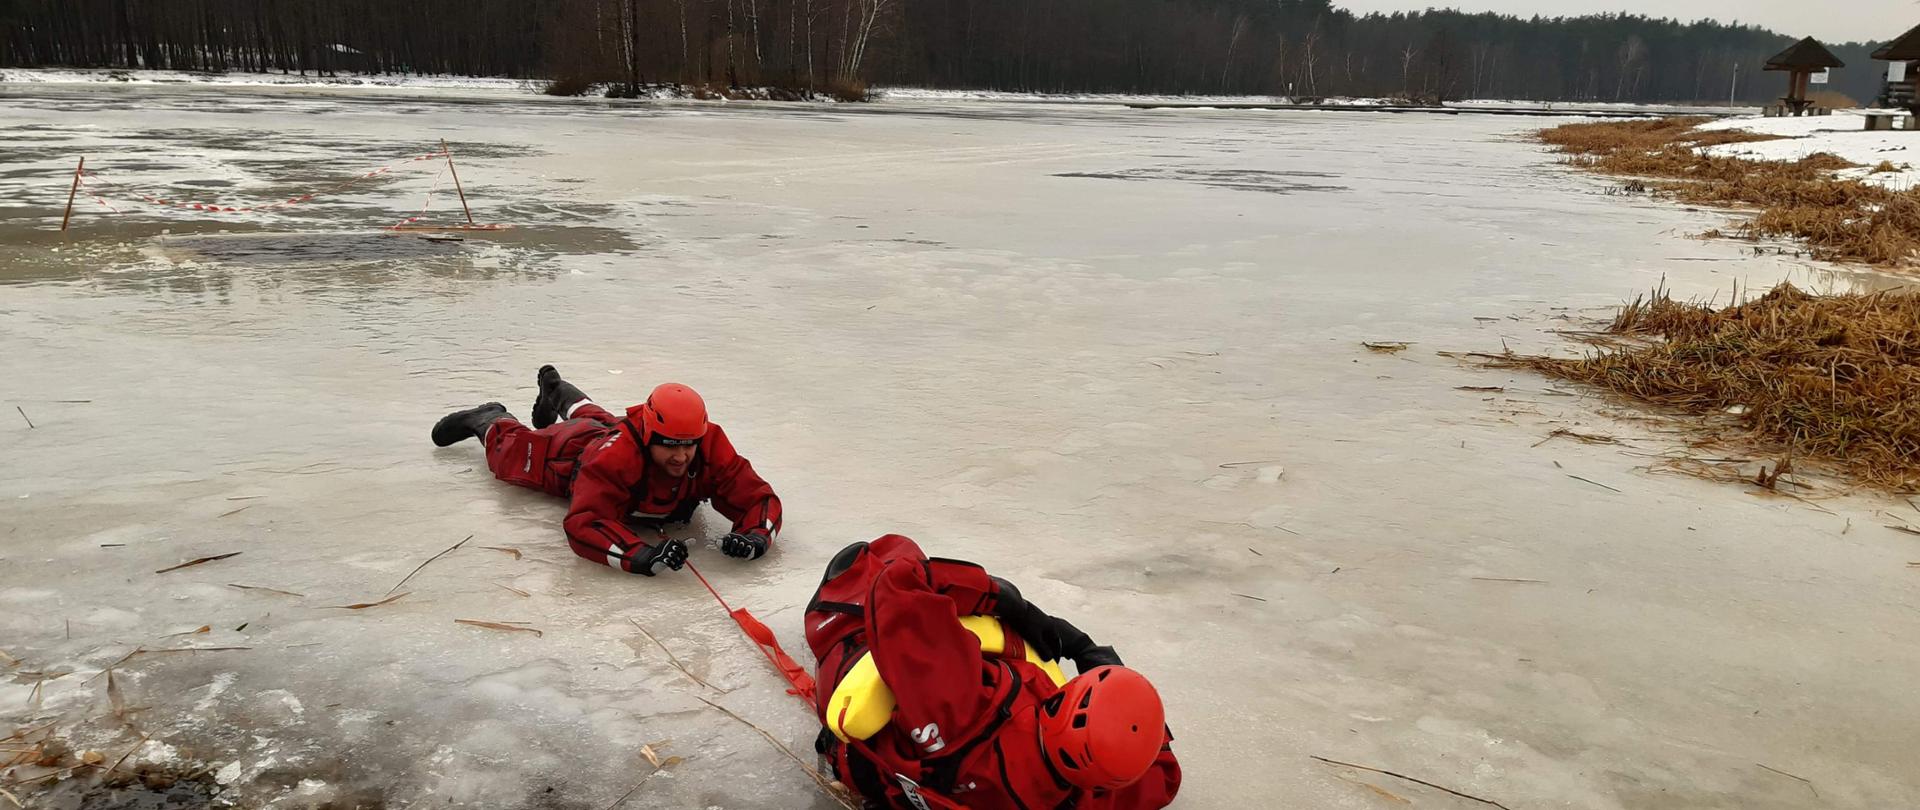 Zdjęcie przedstawia samoratowanie się ratowników, pod którymi załamał się lód